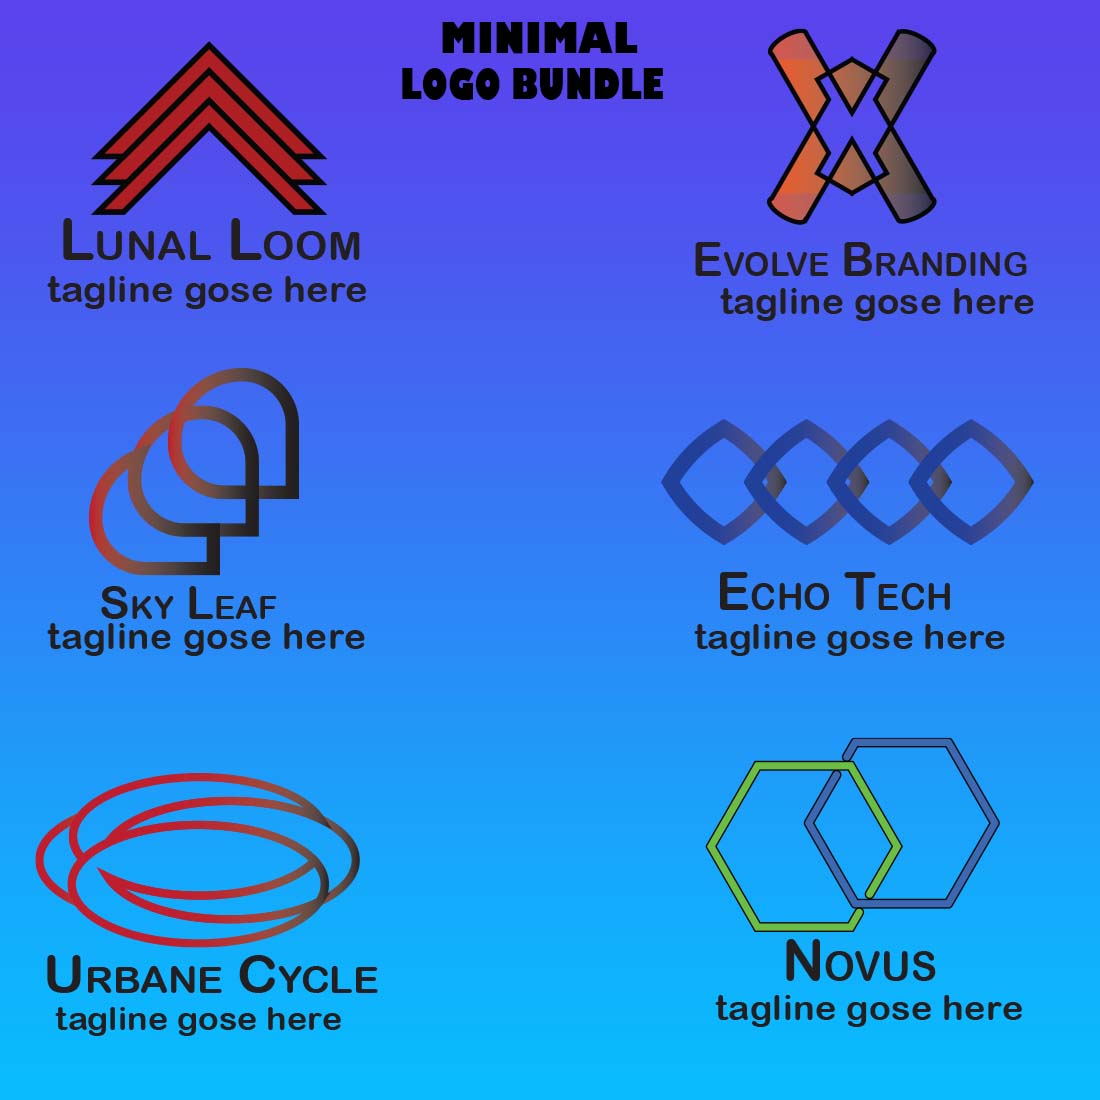 6 Minimilist logos bundle cover image.